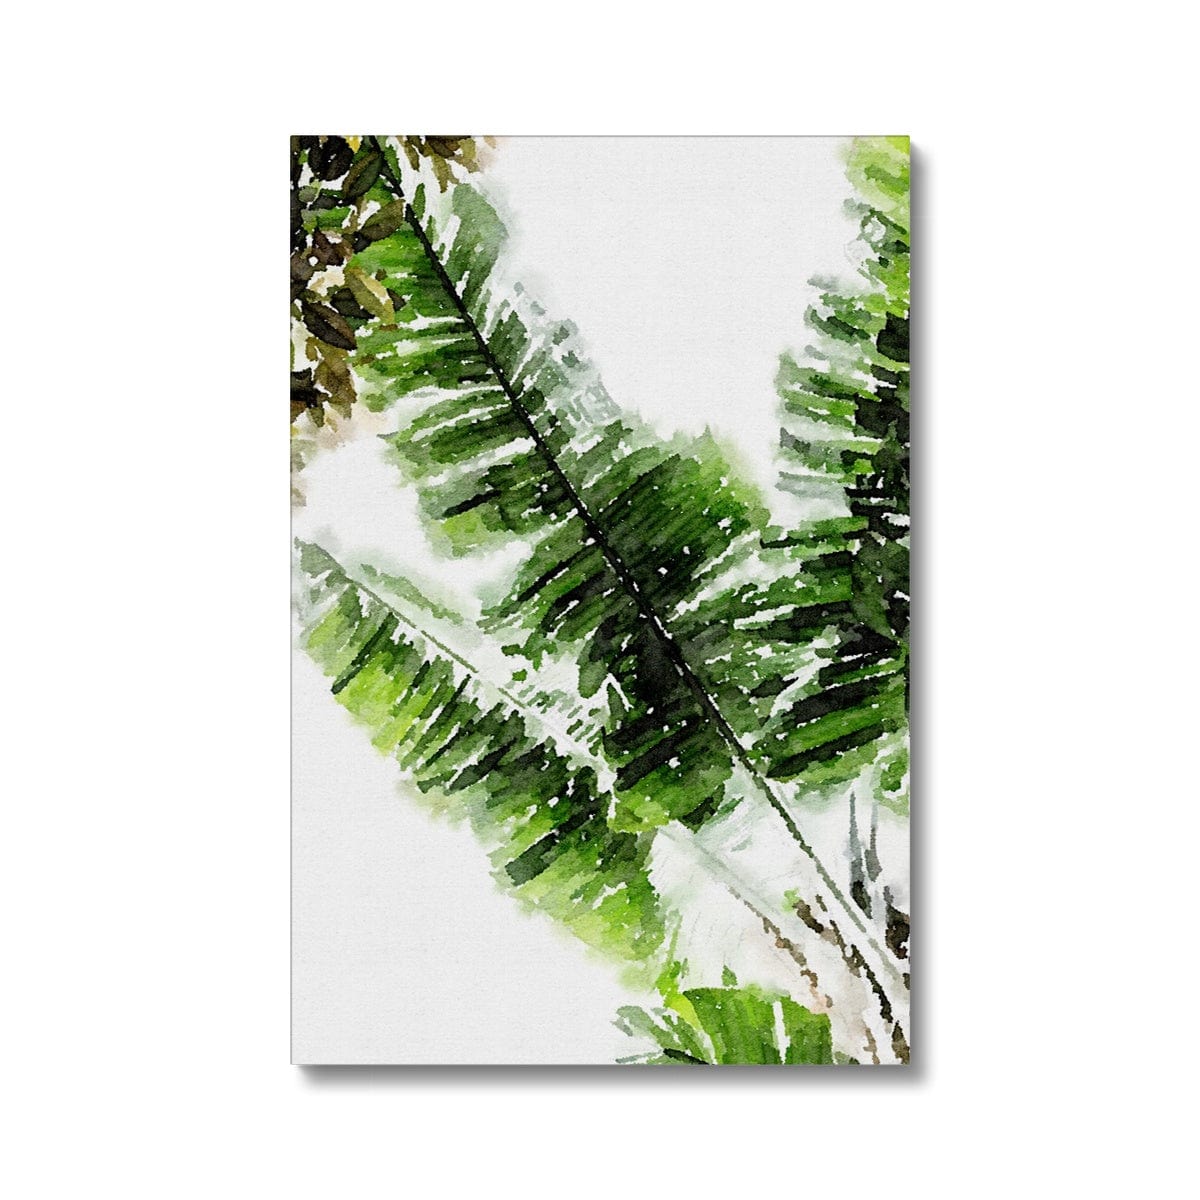 Seek & Ramble Canvas 8"x12" (20.32x30.48cm) / Image Wrap Watercolour Fan Palm Eco Canvas